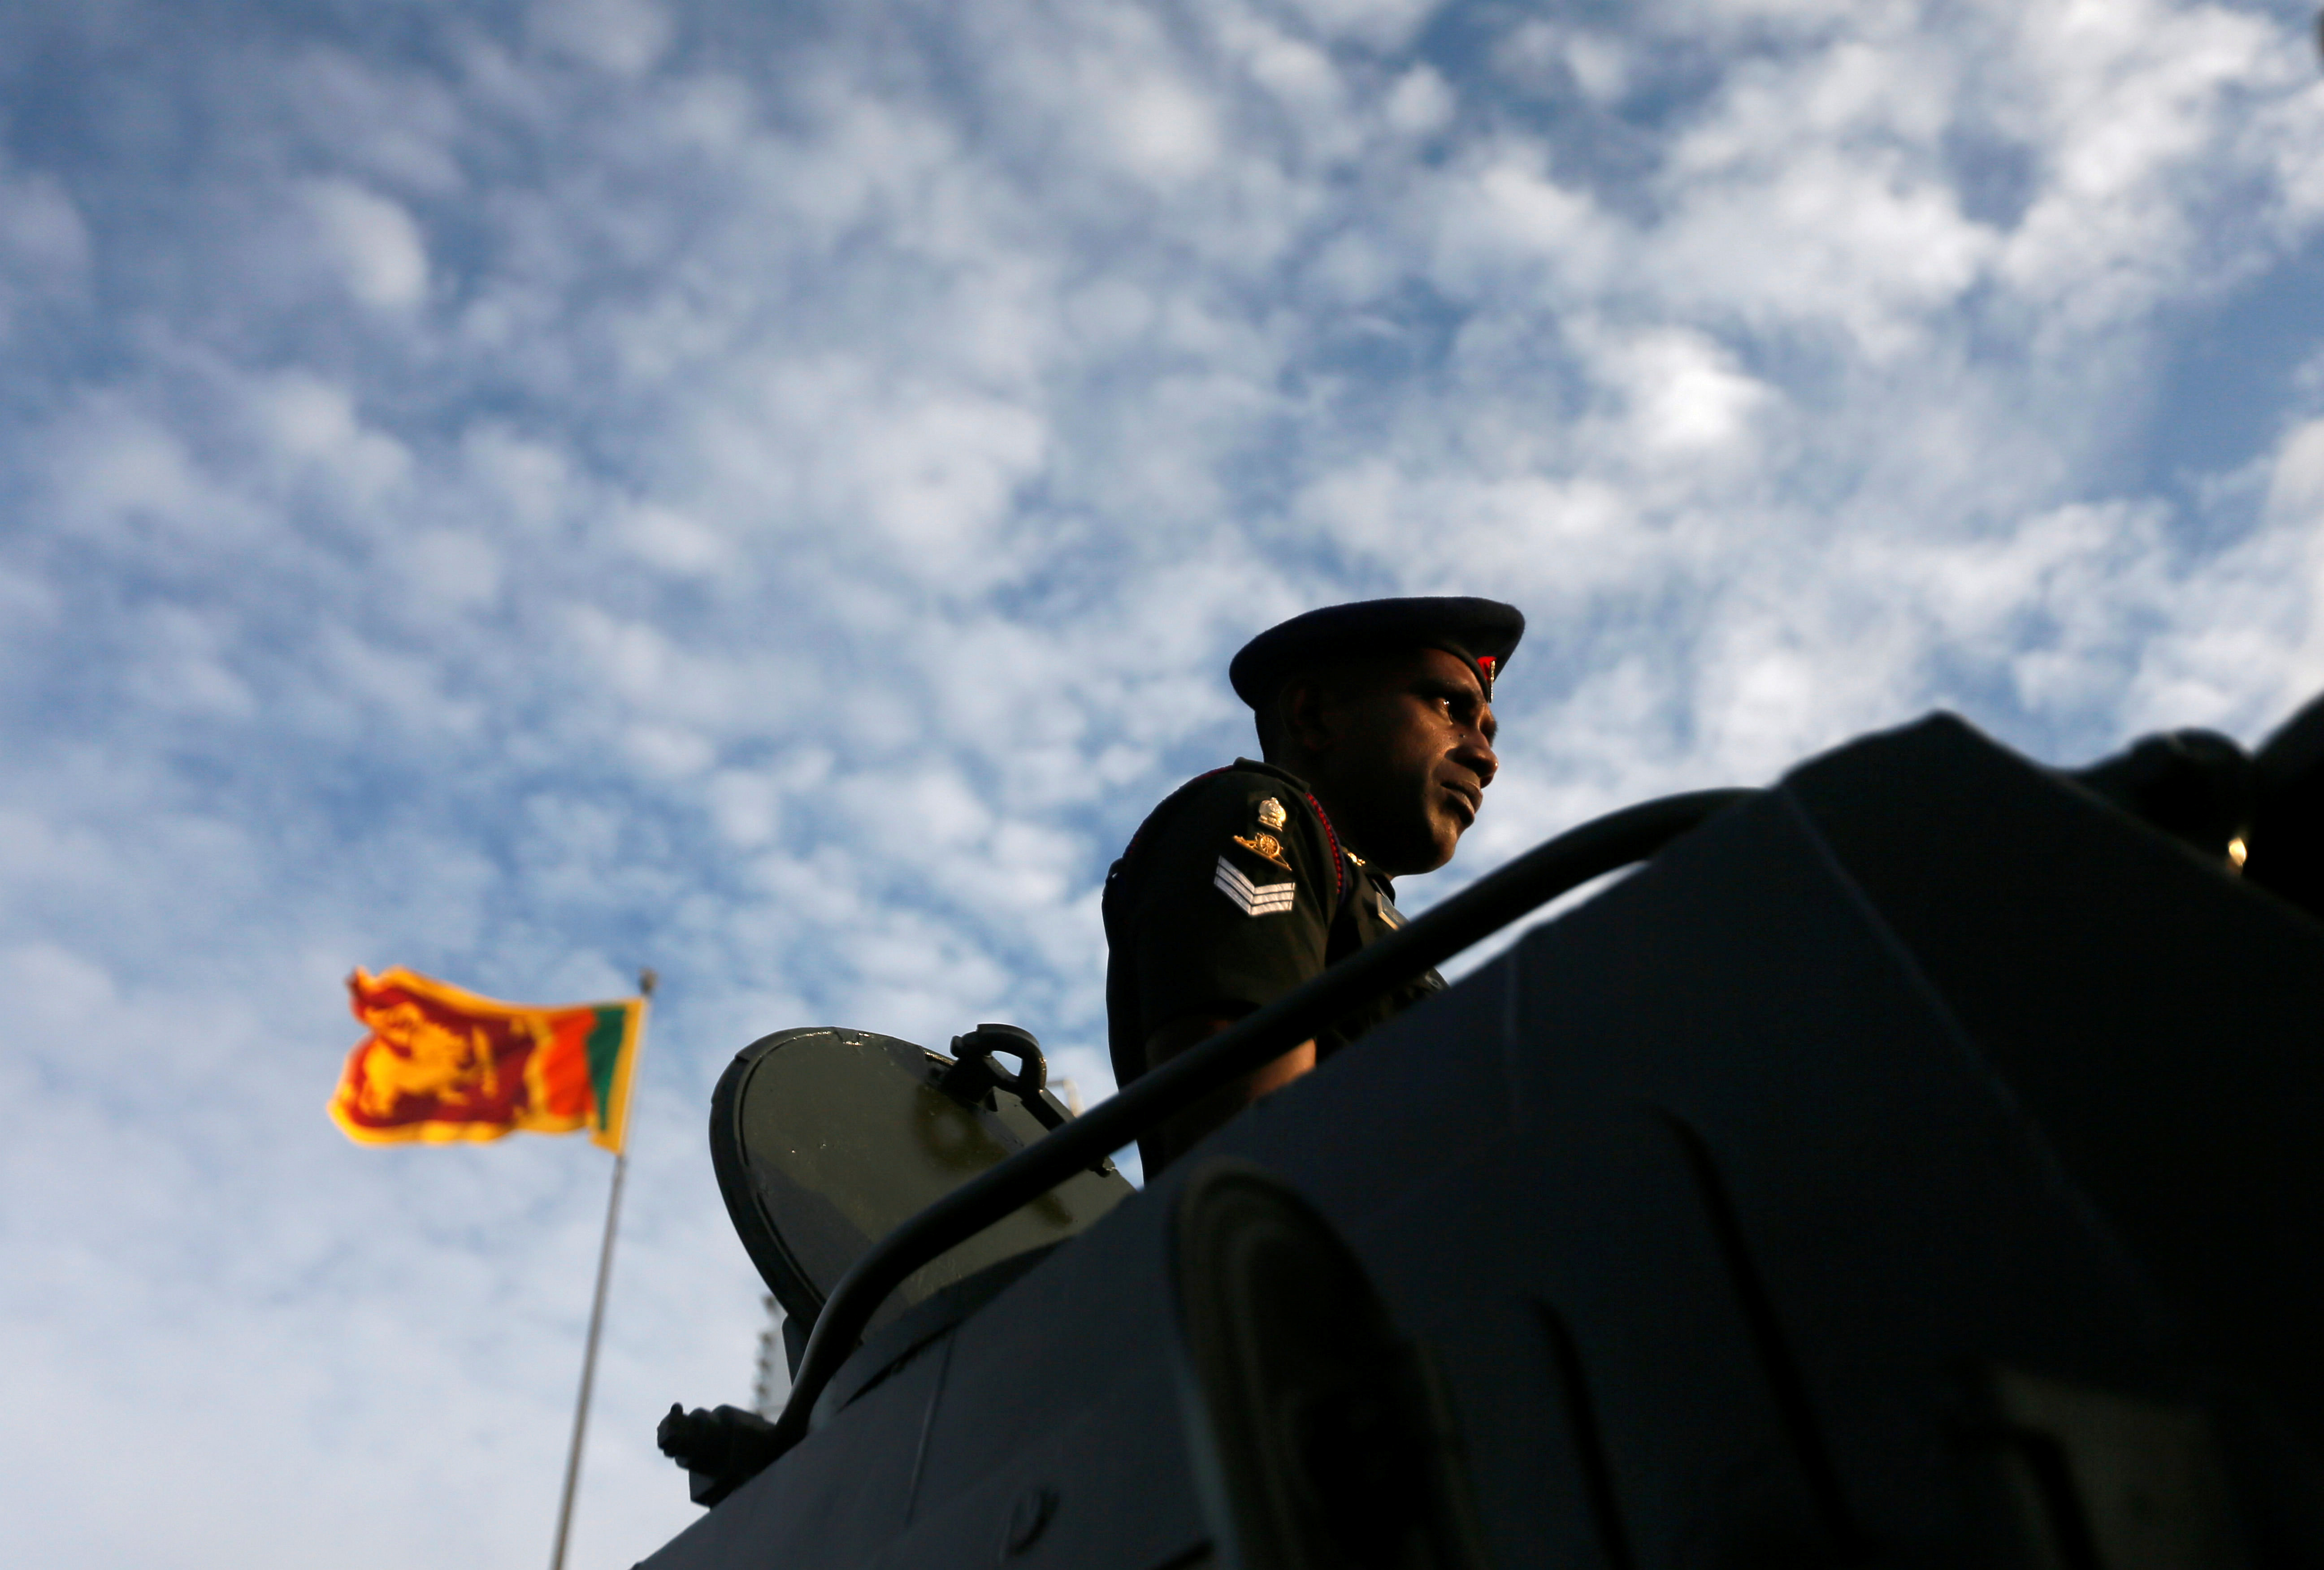 سريلانكا تستعد للاحتفال بالذكرى الـ70 ليوم الاستقلال